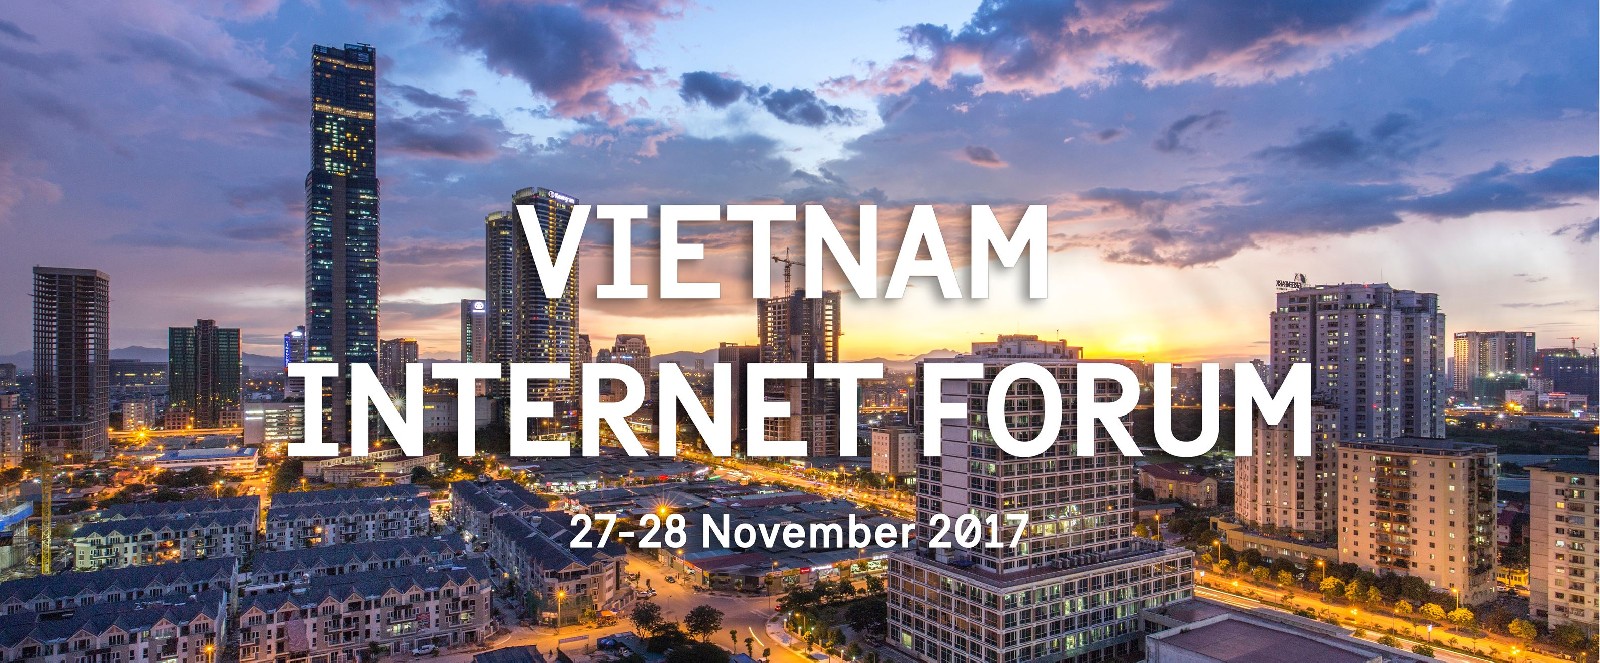 Vietnam Internet Forum 2017 - The 1st forum on Internet & Society in Vietnam